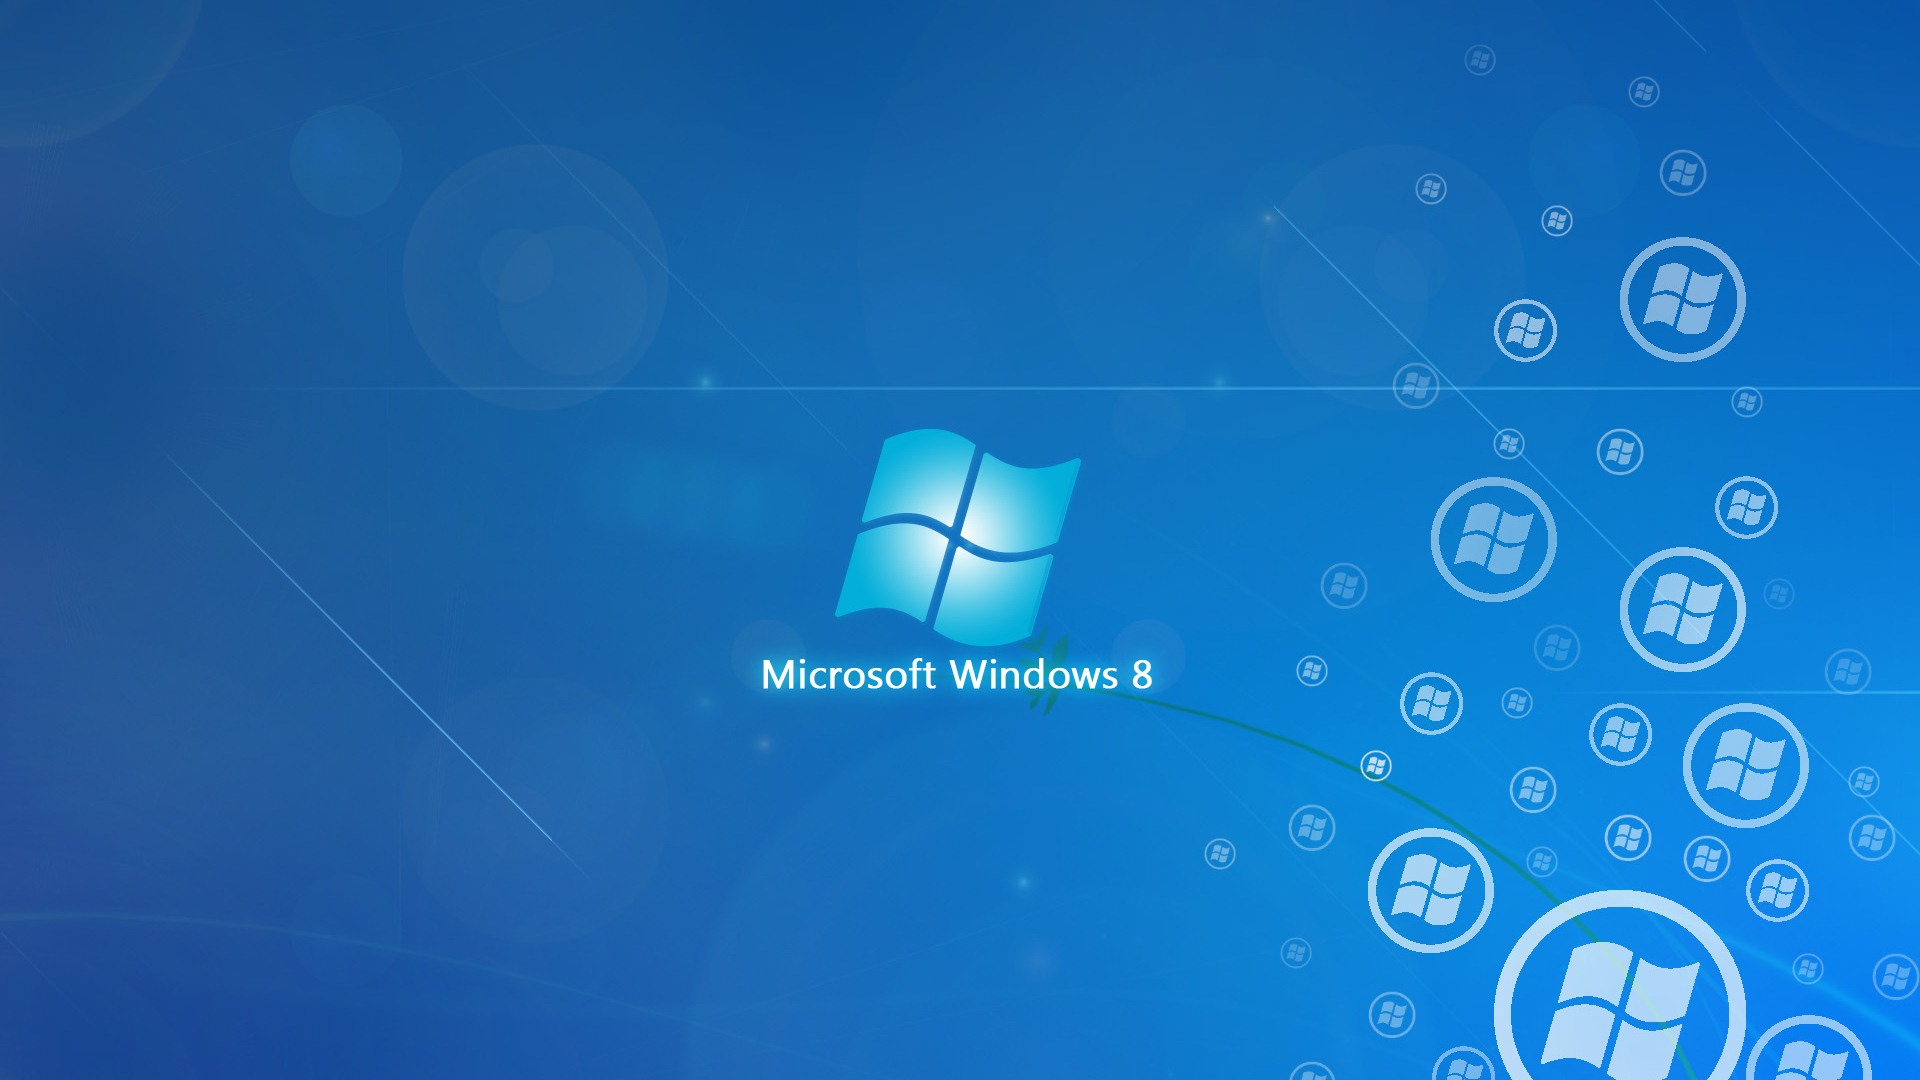 Windows 8 theme wallpaper (2) #18 - 1920x1080 Wallpaper Download ...